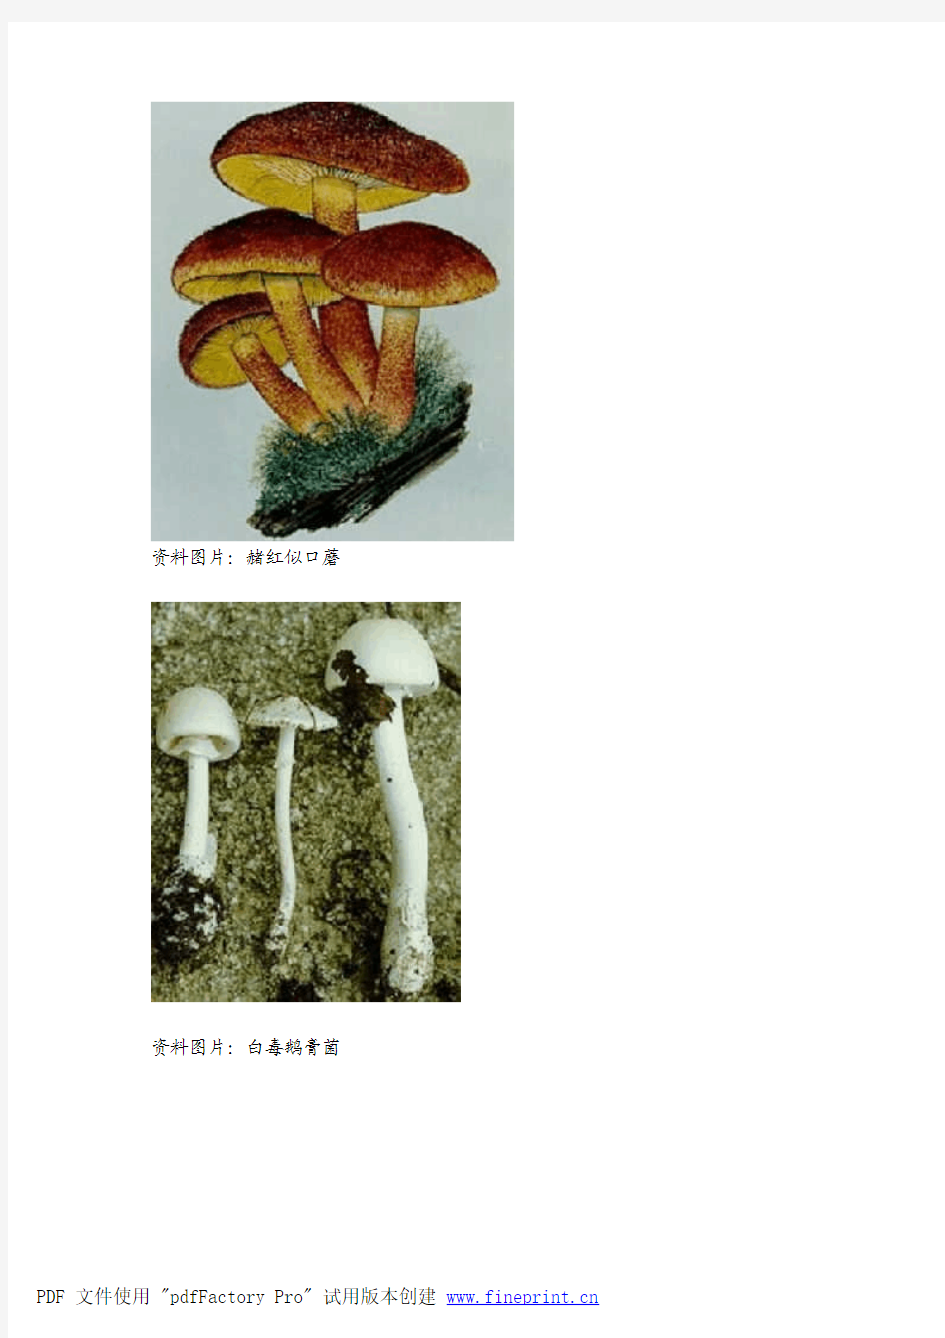 教你辨识17种毒蘑菇(附图)